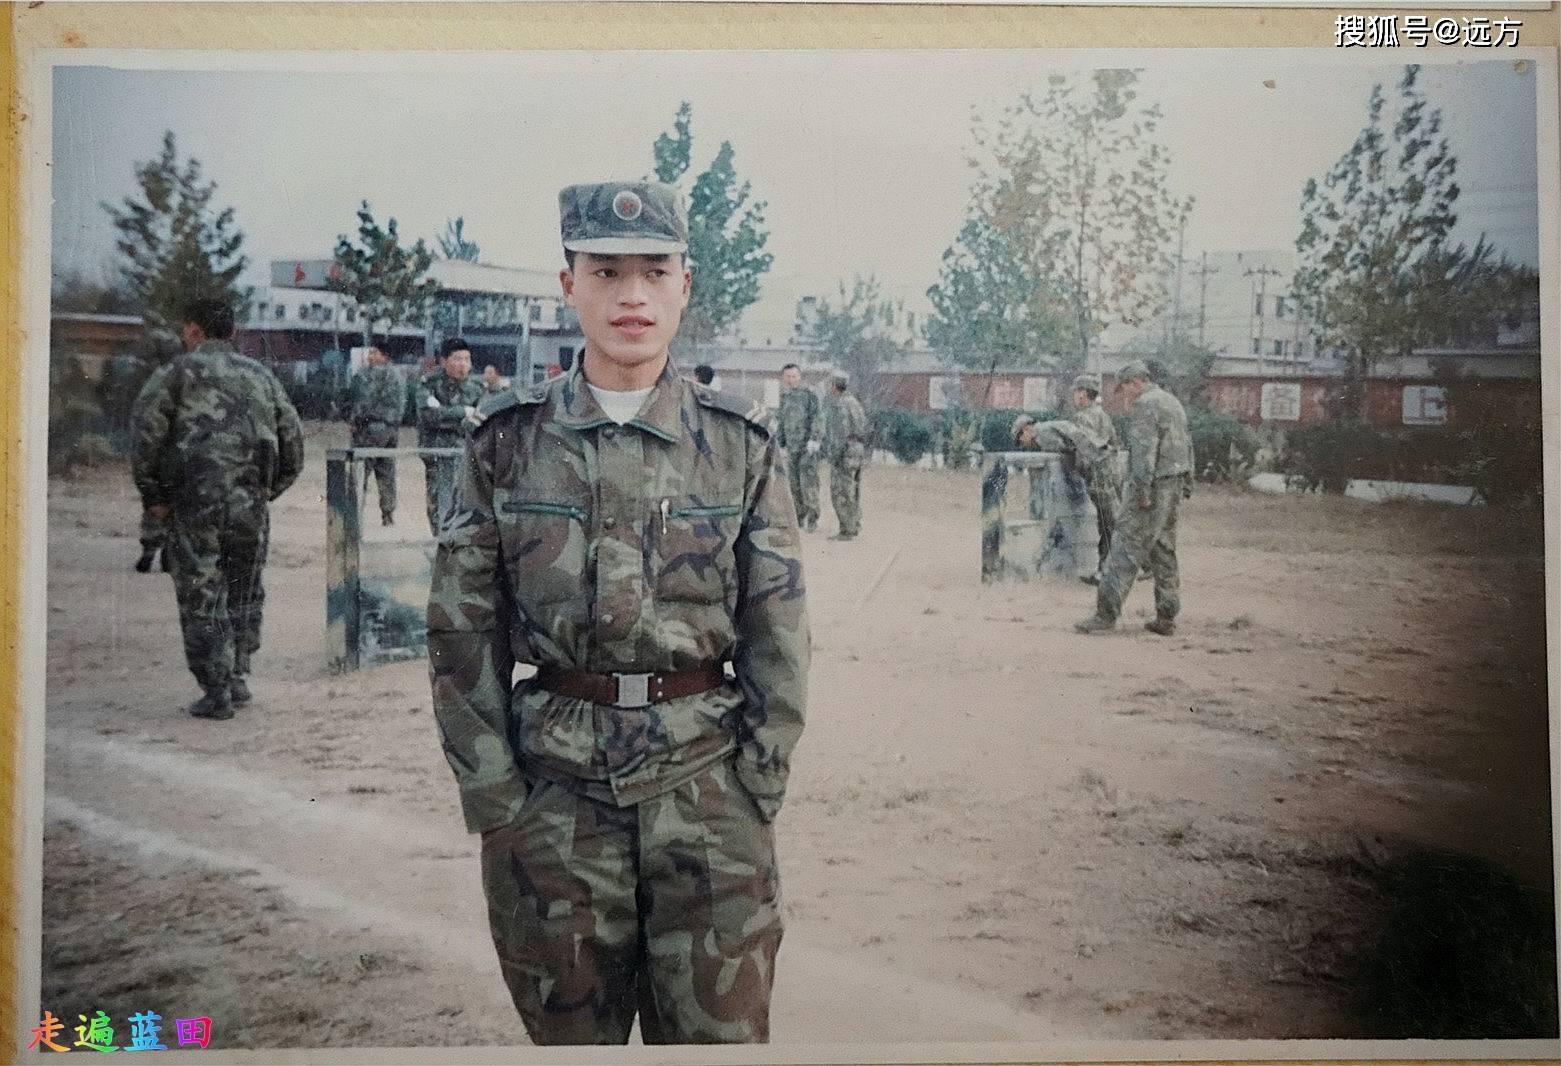 团员,1980年出生,1998年入伍,中国人民解放军71336部队,班长,上等兵